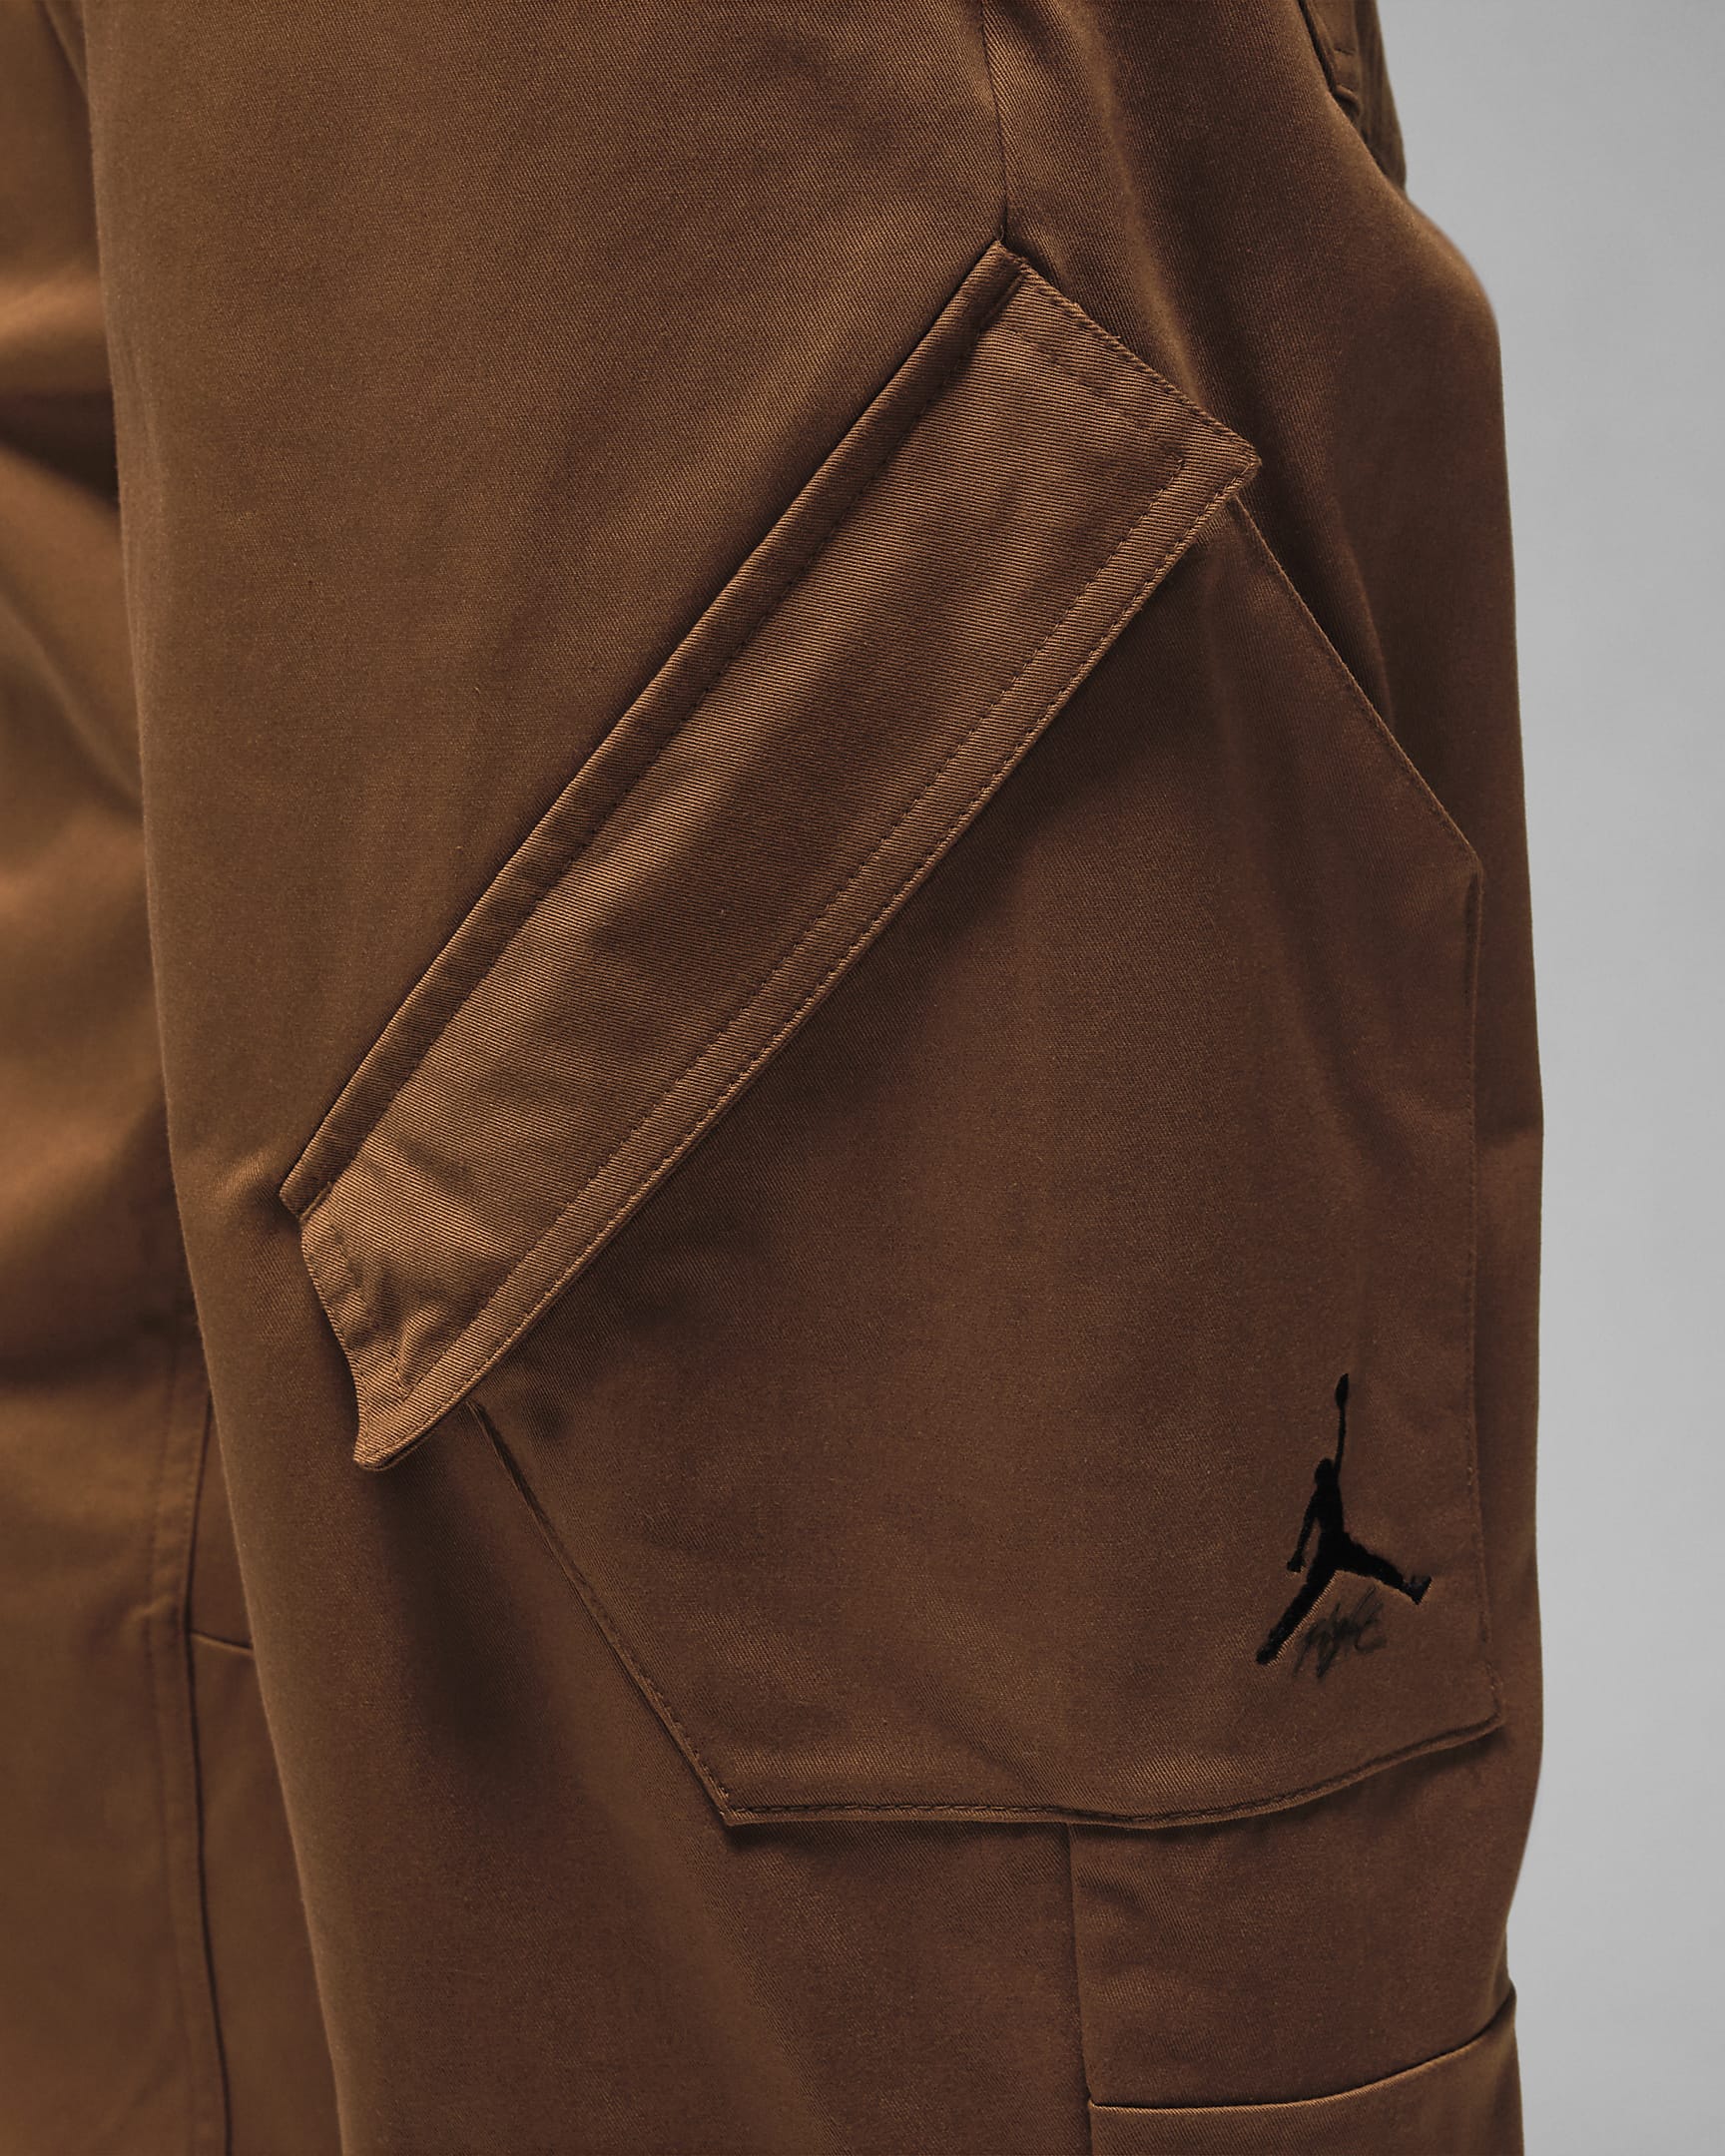 Jordan Essentials Chicago Men's Trousers - Light British Tan/Black